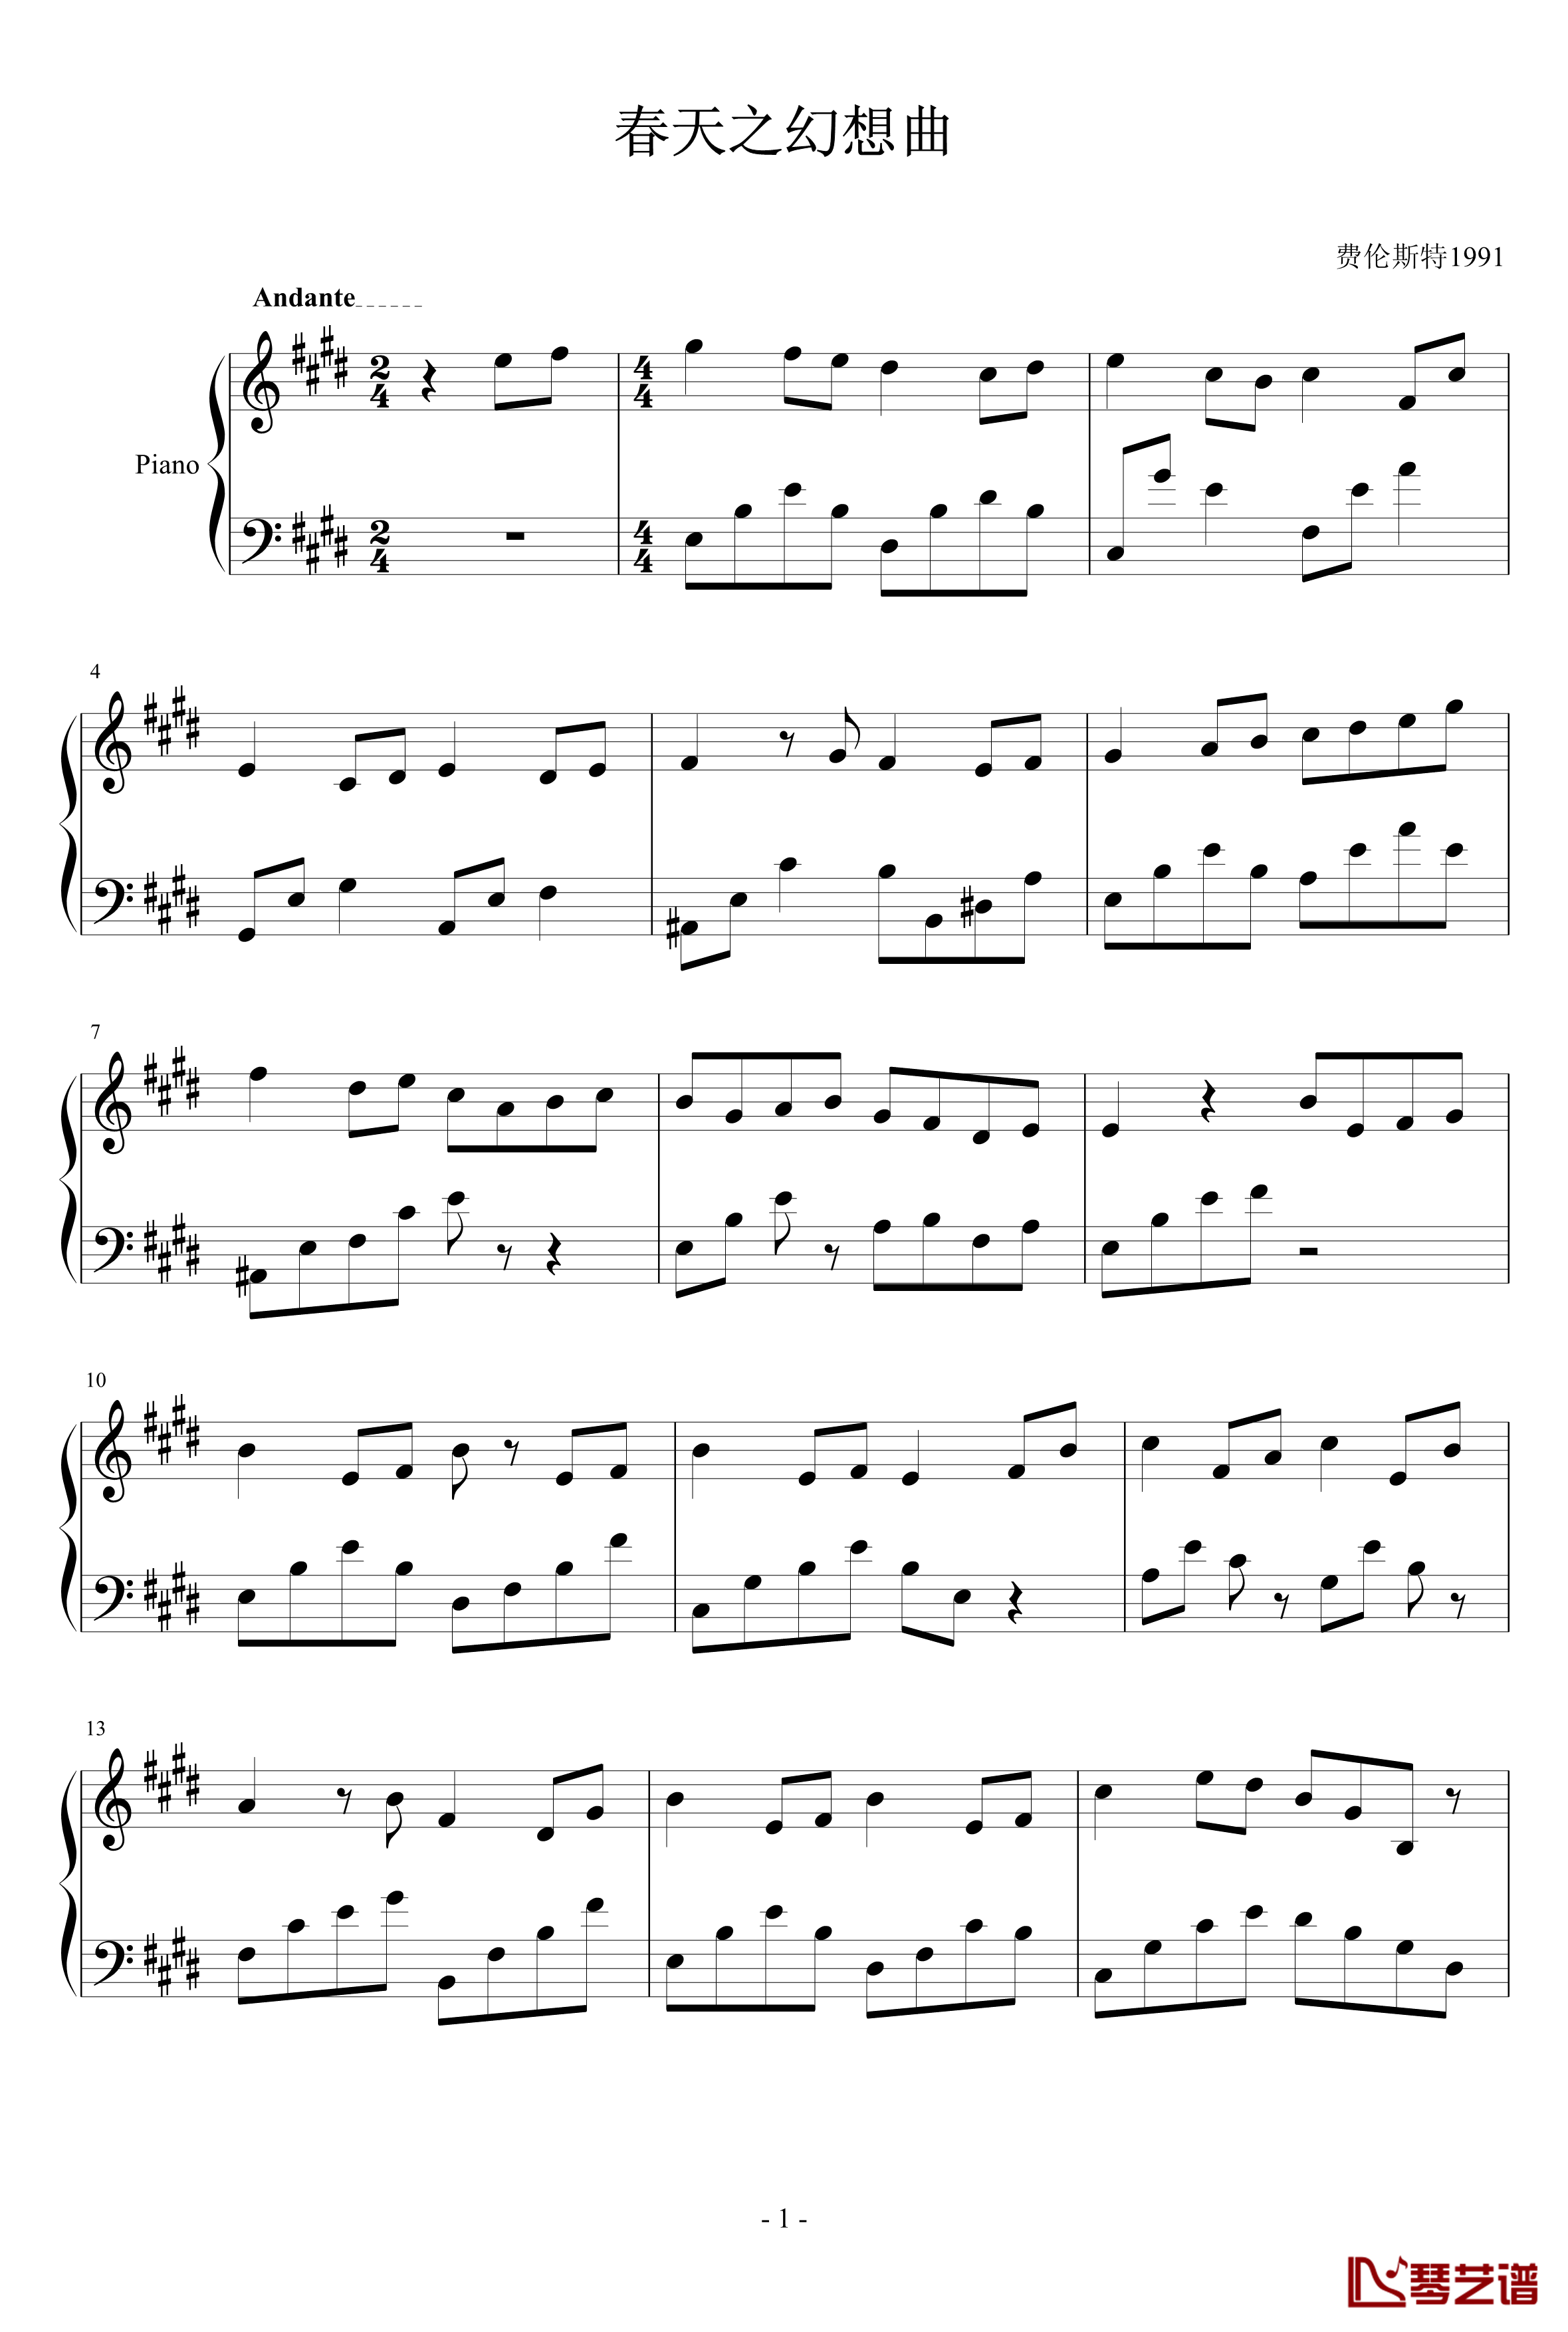 春天的幻想曲钢琴谱-费伦斯特19911